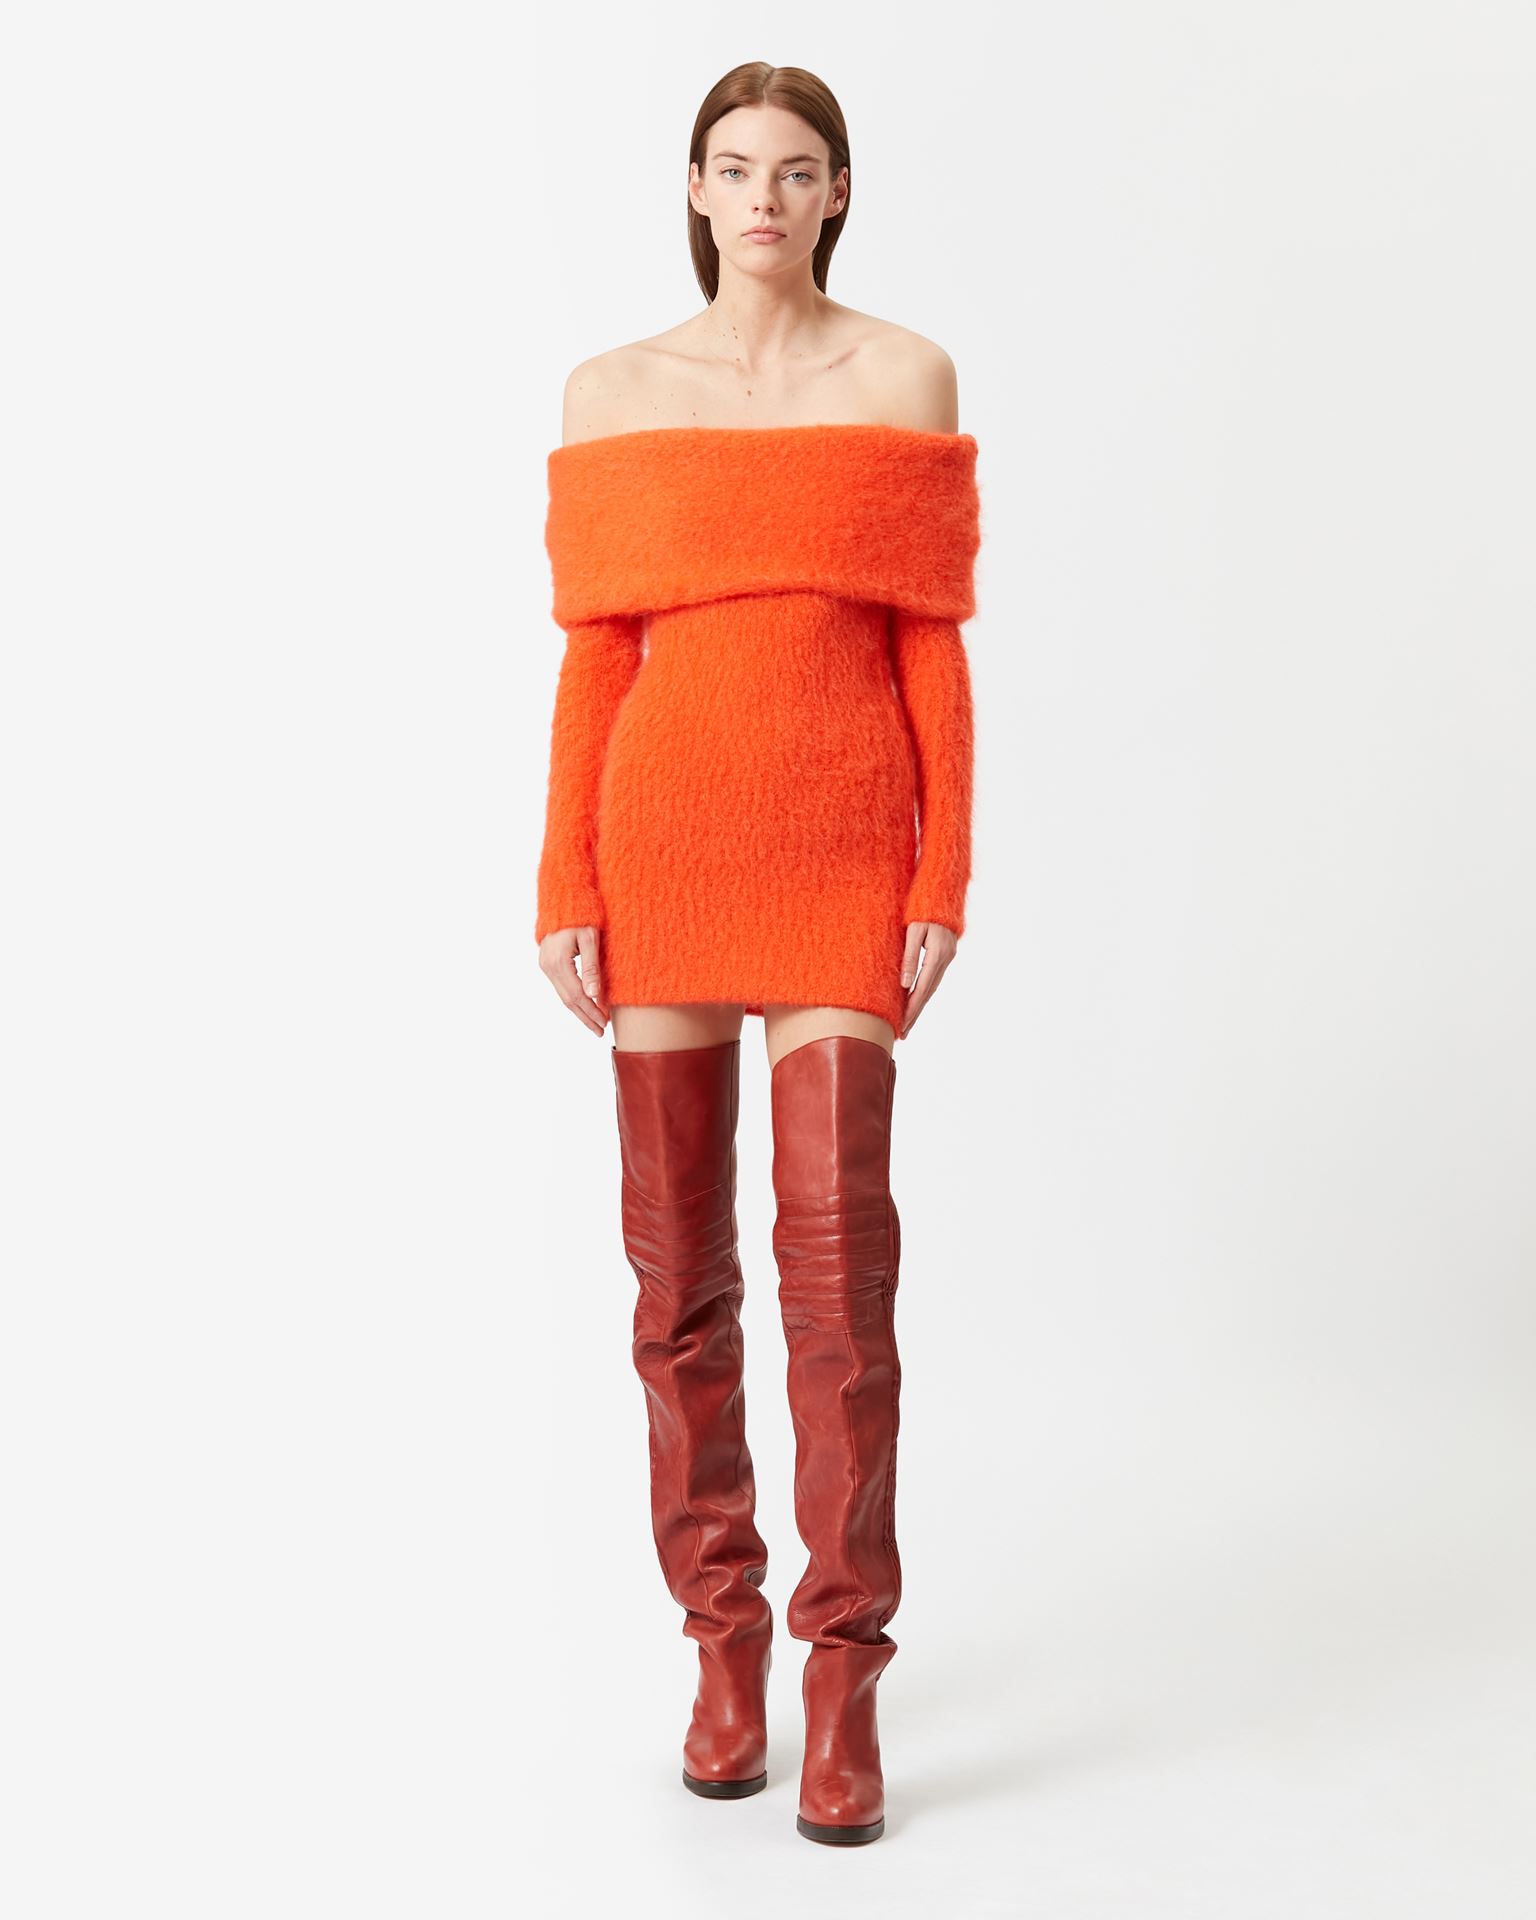 Isabel Marant, Aria Mohair Mini Dress - Women - Orange